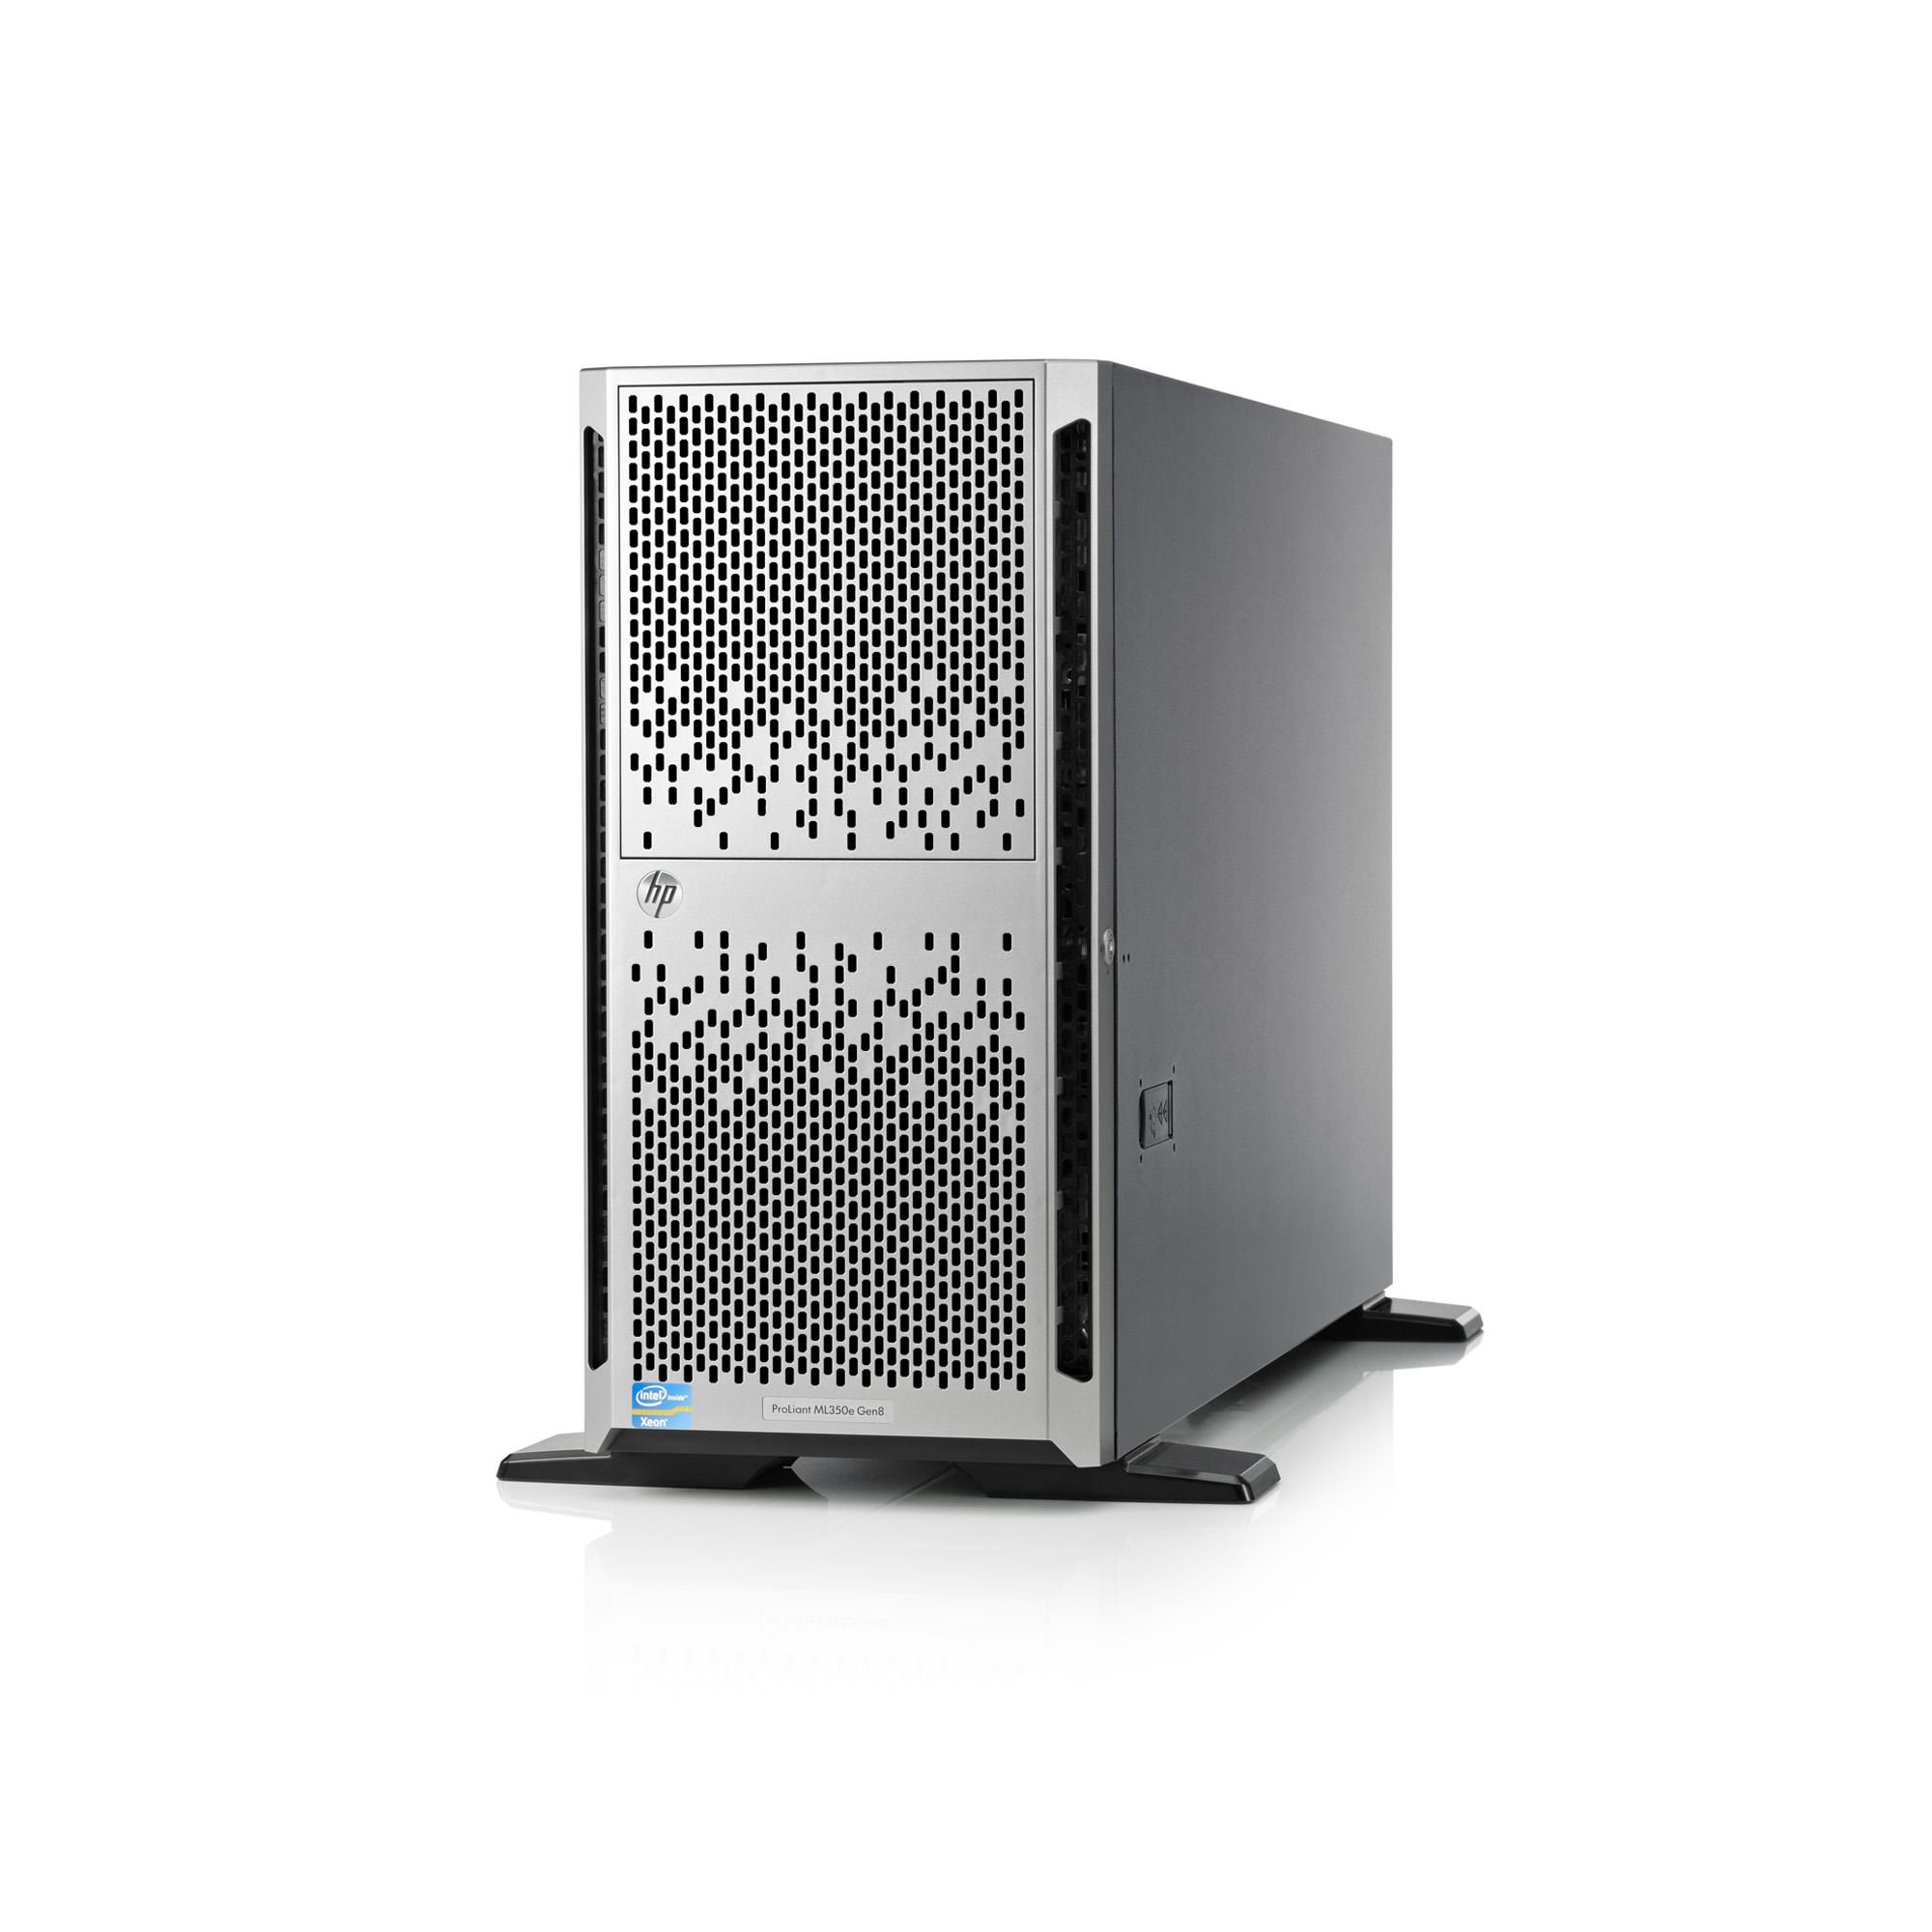 HP Hewlett Packard ProLiant ML350p Gen8 Performance Tower Server